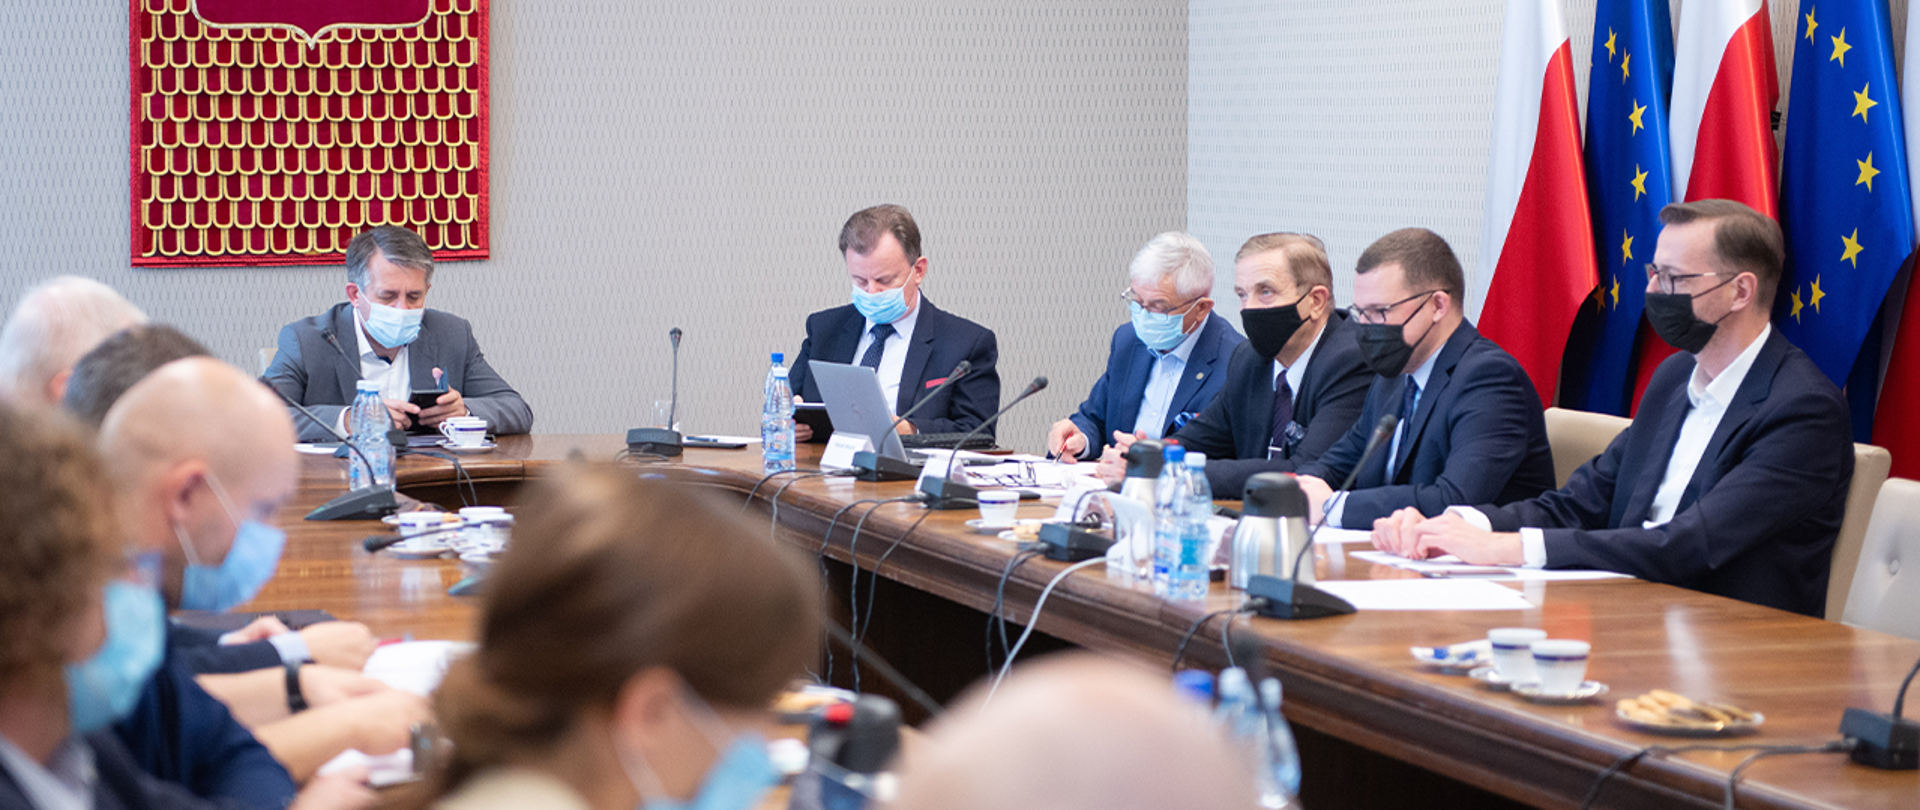 Zdjęcie przedstawia wiceministra Pawła Szefernakera wraz z innymi uczestnikami w trakcie obrad Komisji Wspólnej Rządu i Samorządu Terytorialnego. W tle znajdują się flagi Polski i Unii Europejskiej.